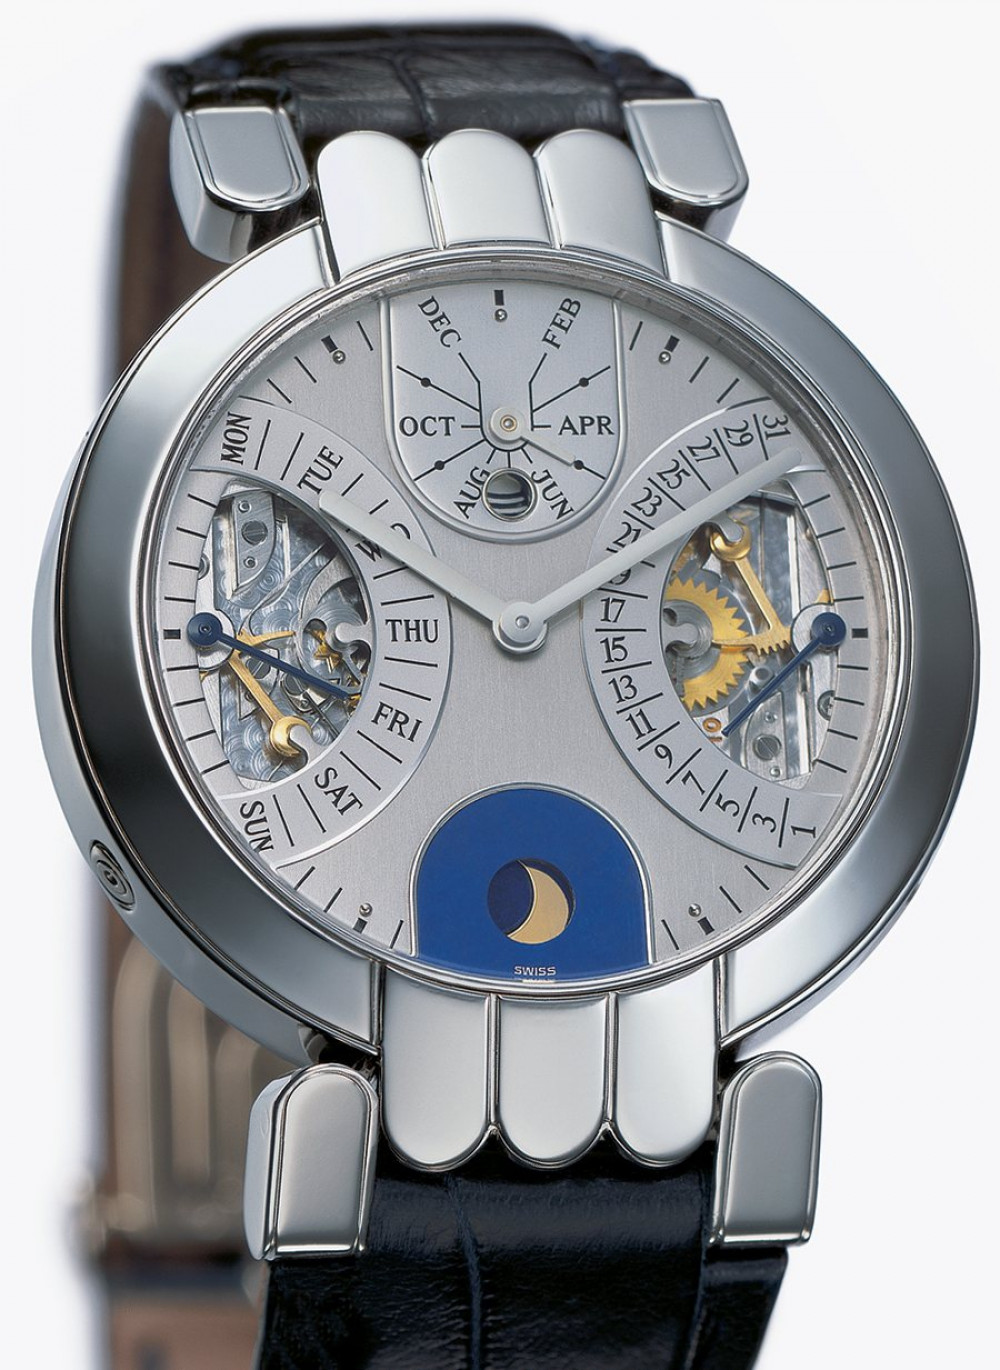 Zegarek firmy Harry Winston, model Perpetual Calendar